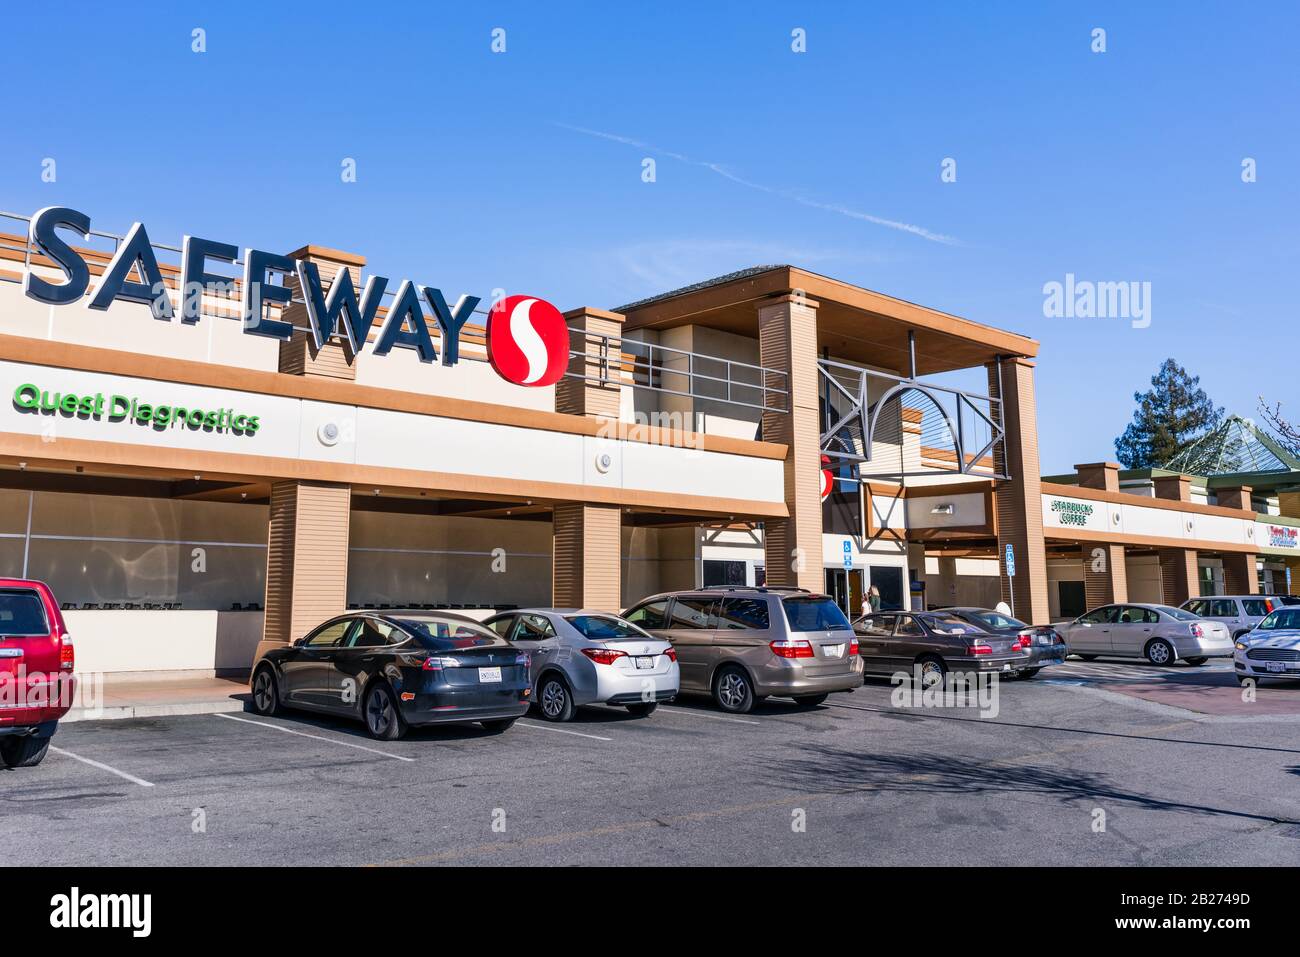 Februar 2020 Santa Clara/CA/USA - Der Eingang eines der Safeway Supermärkte im Süden der Bucht von San Francisco Stockfoto